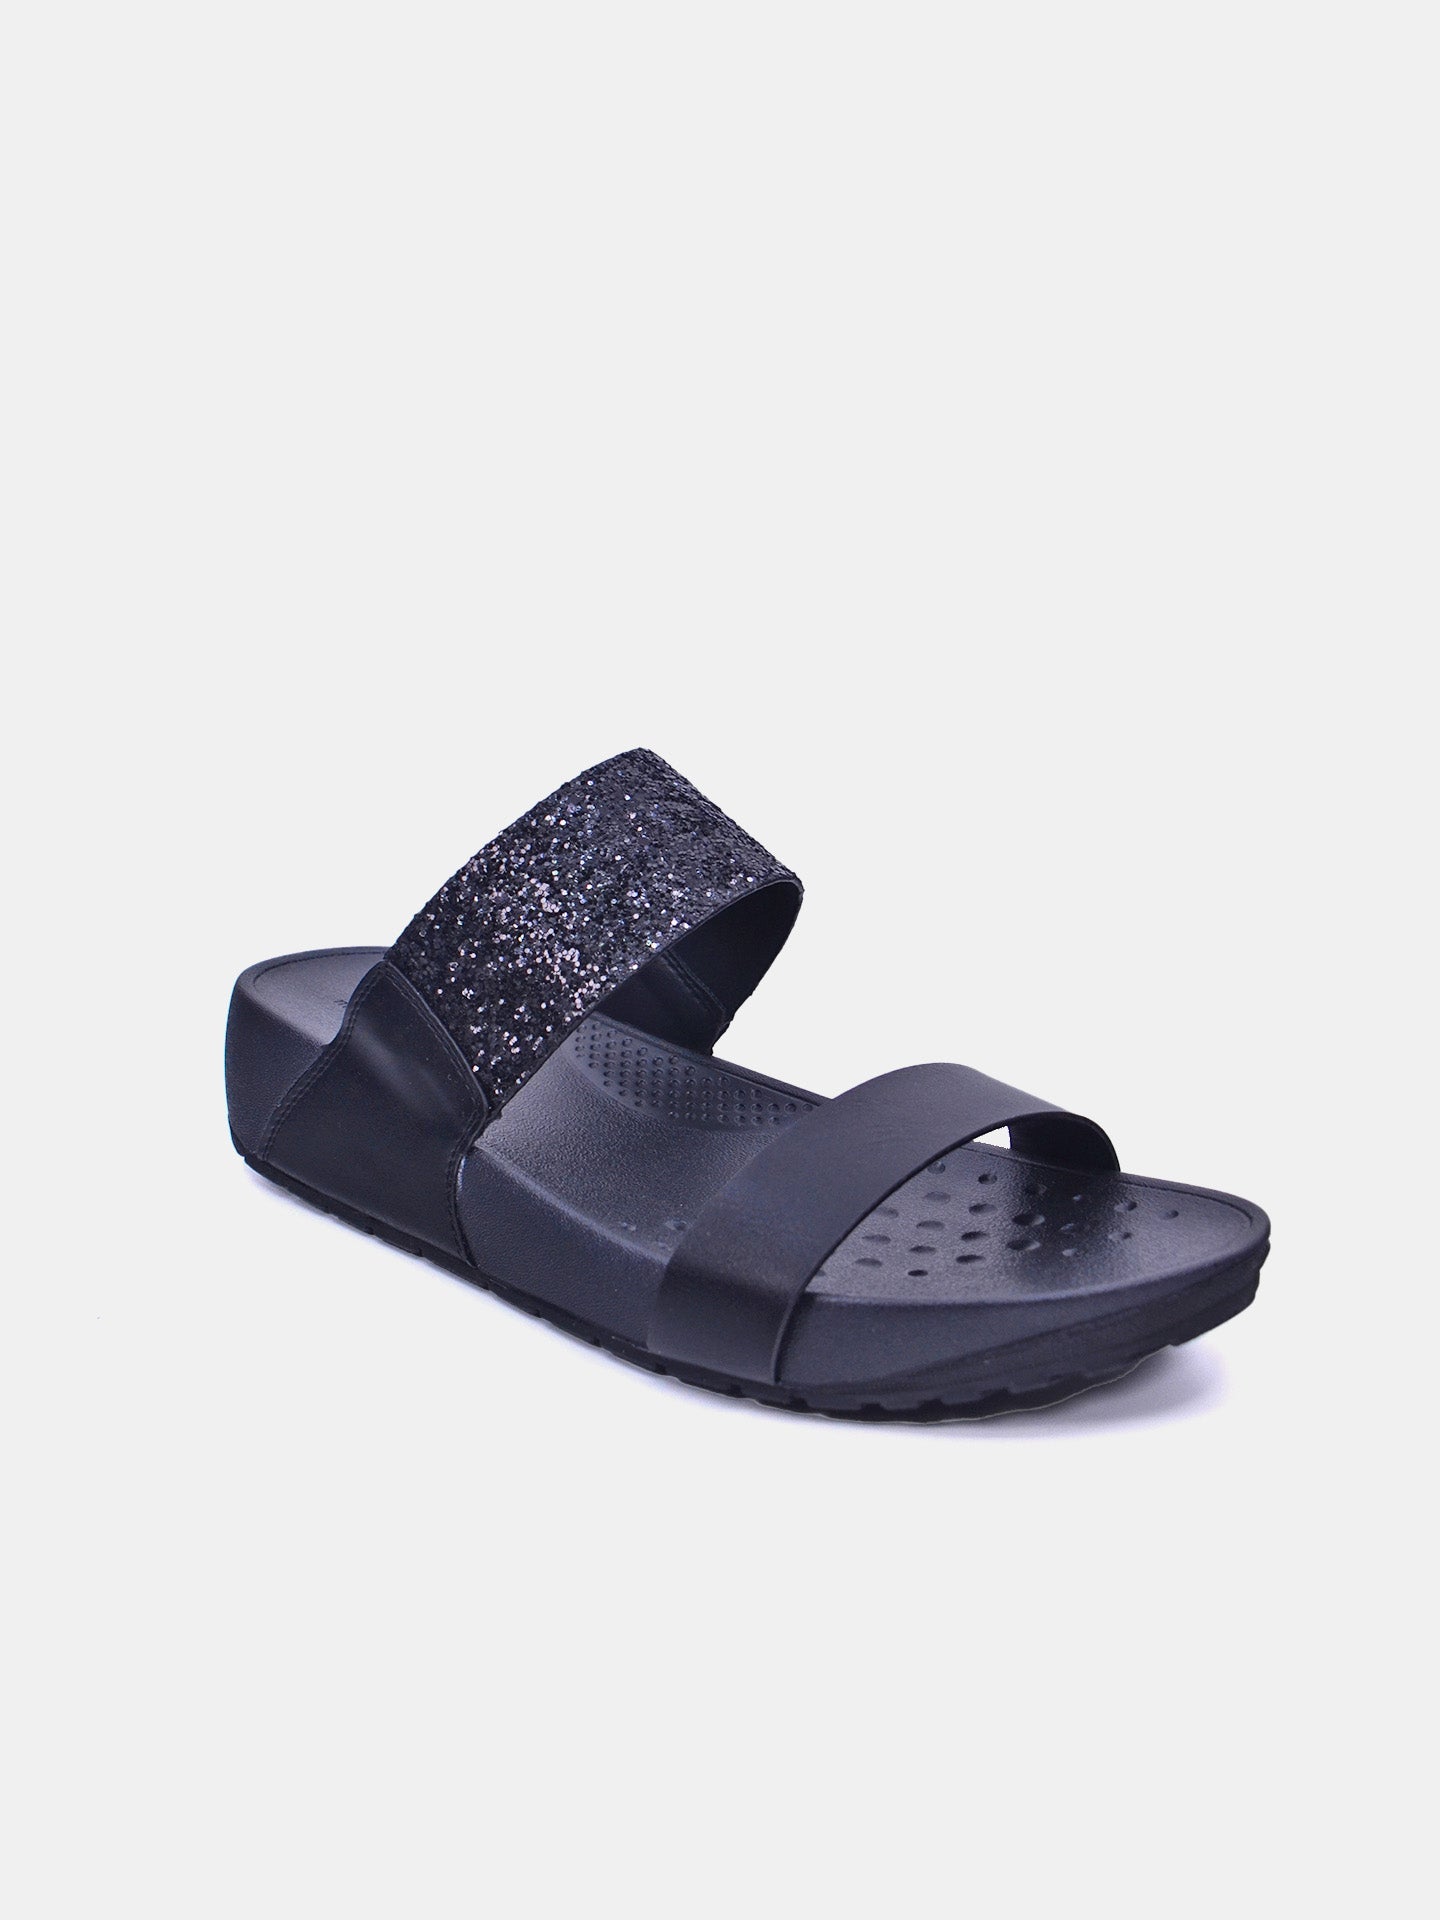 Michelle Morgan RJL187-03B Women's Sandals #color_Black